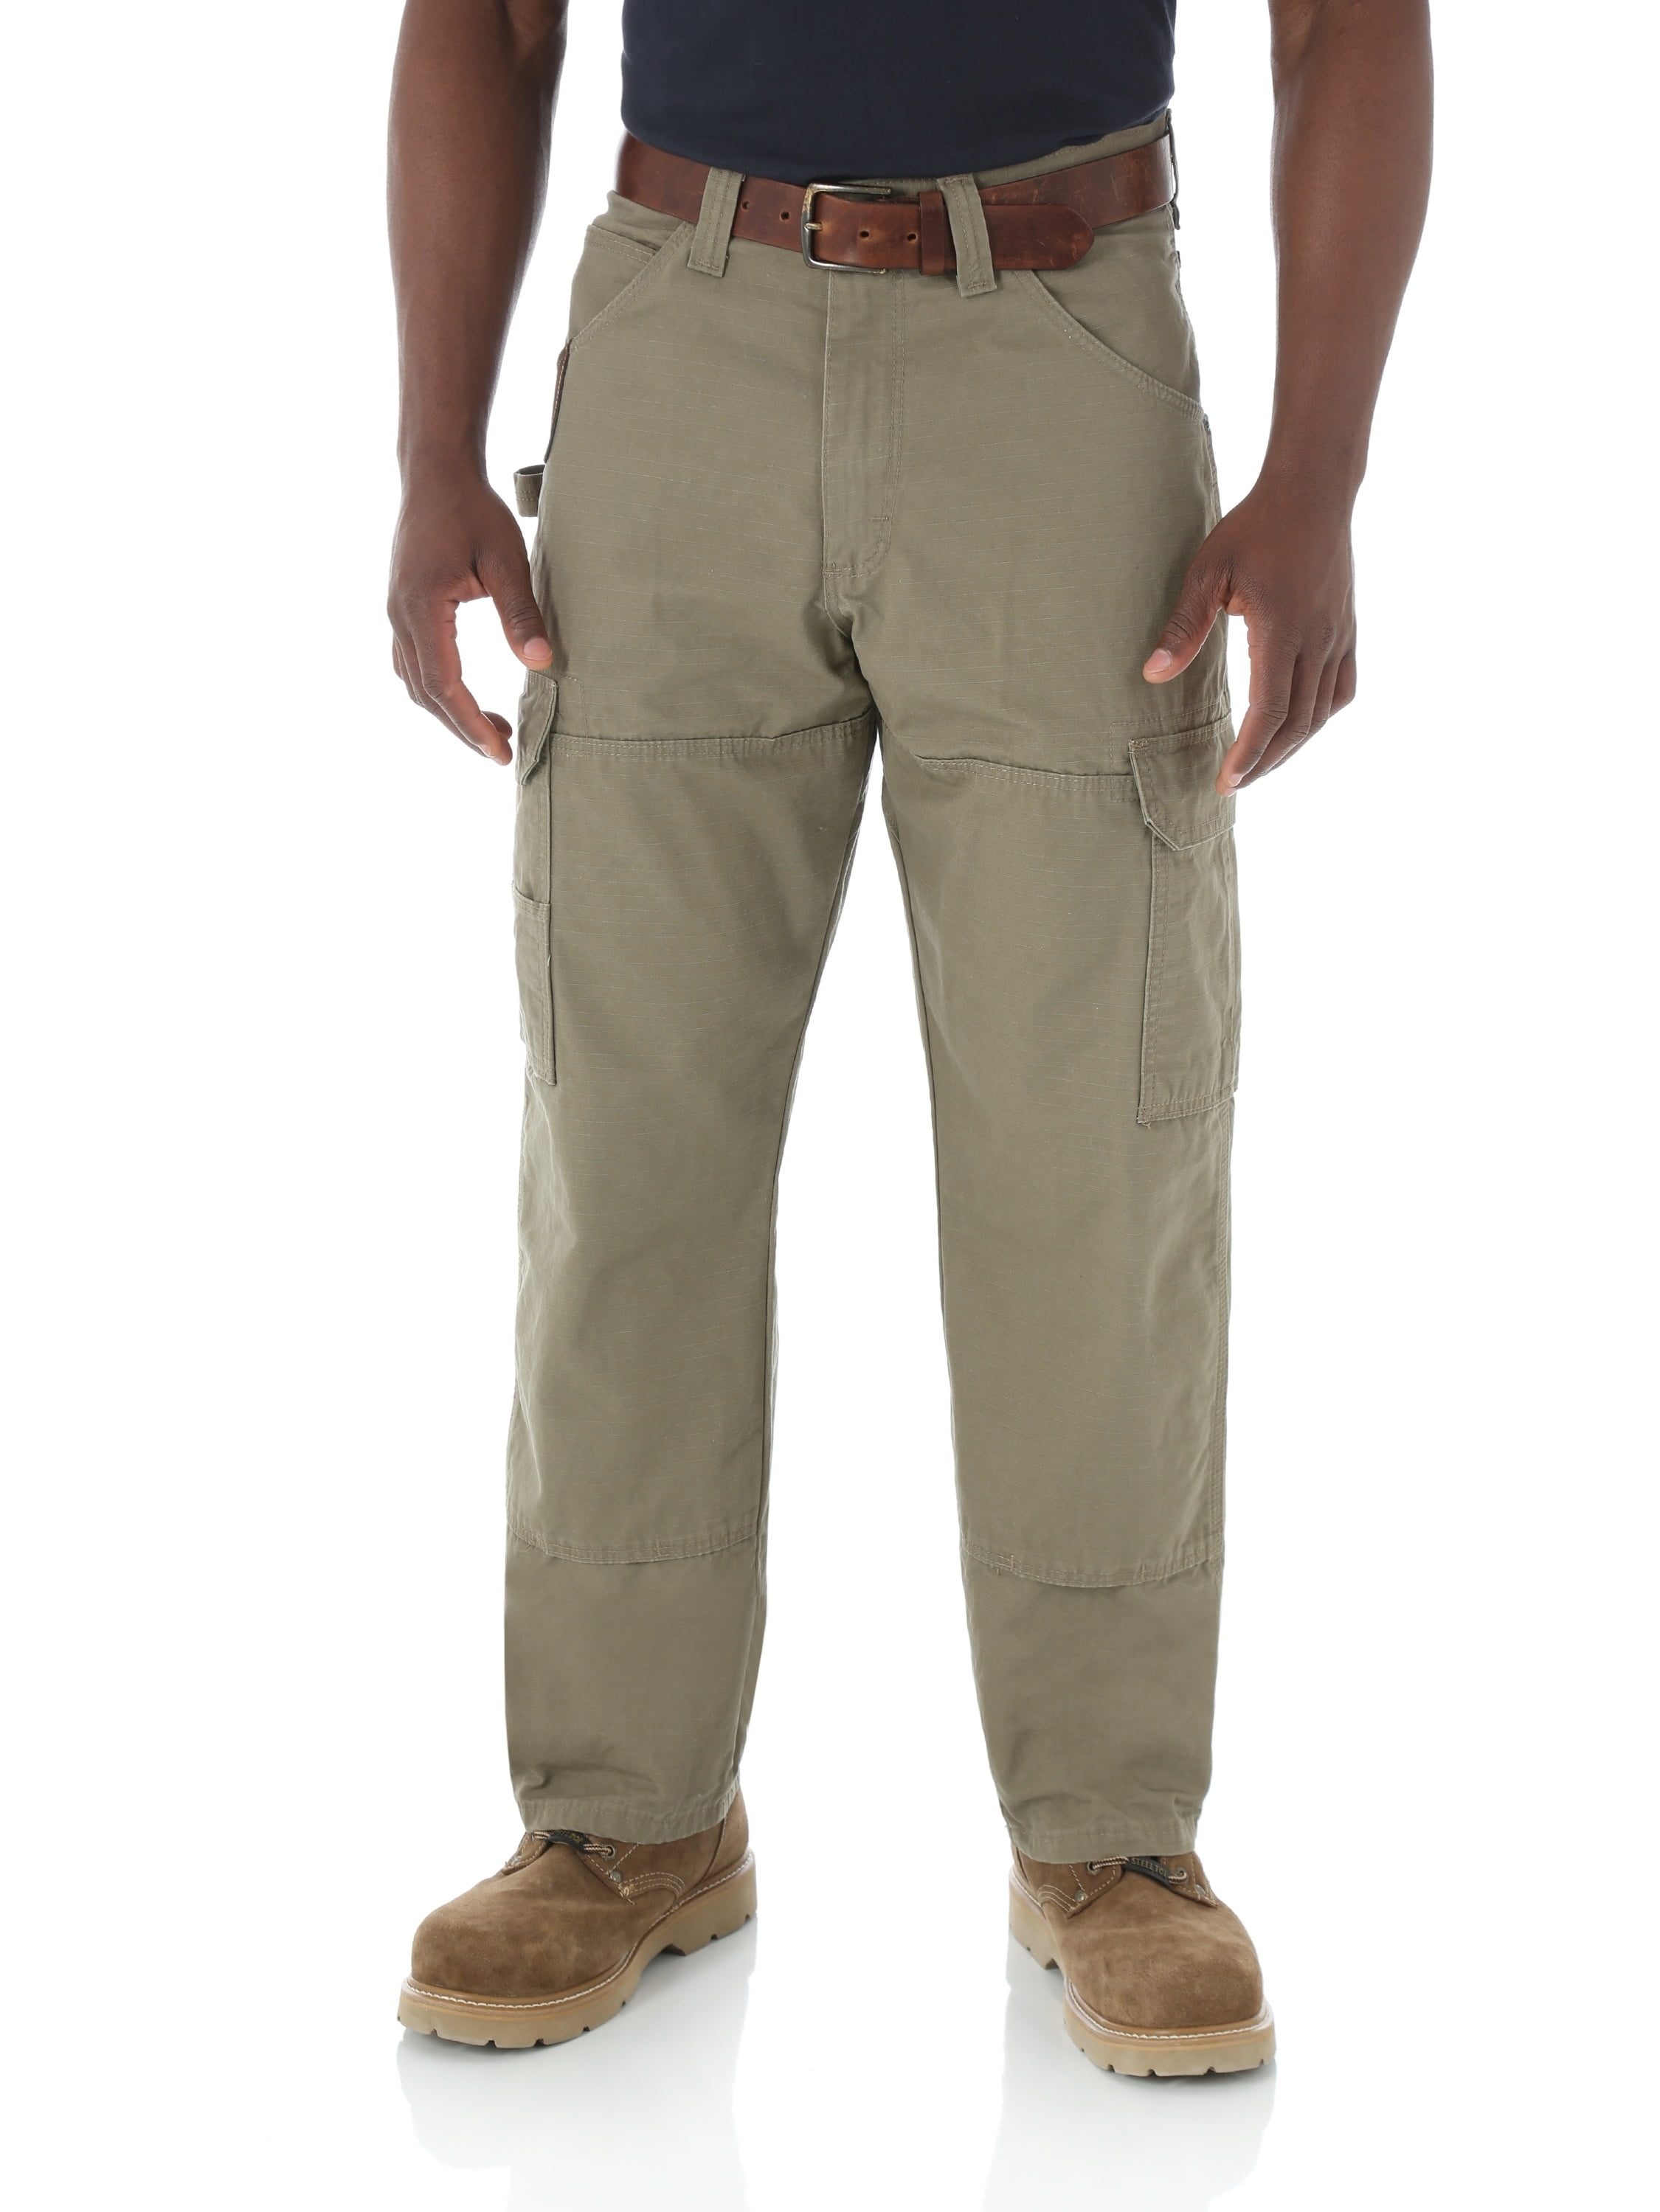 Wrangler Men's RIGGS Workwear Ripstop Ranger Pants - Bark, Bark, 33X34 -  